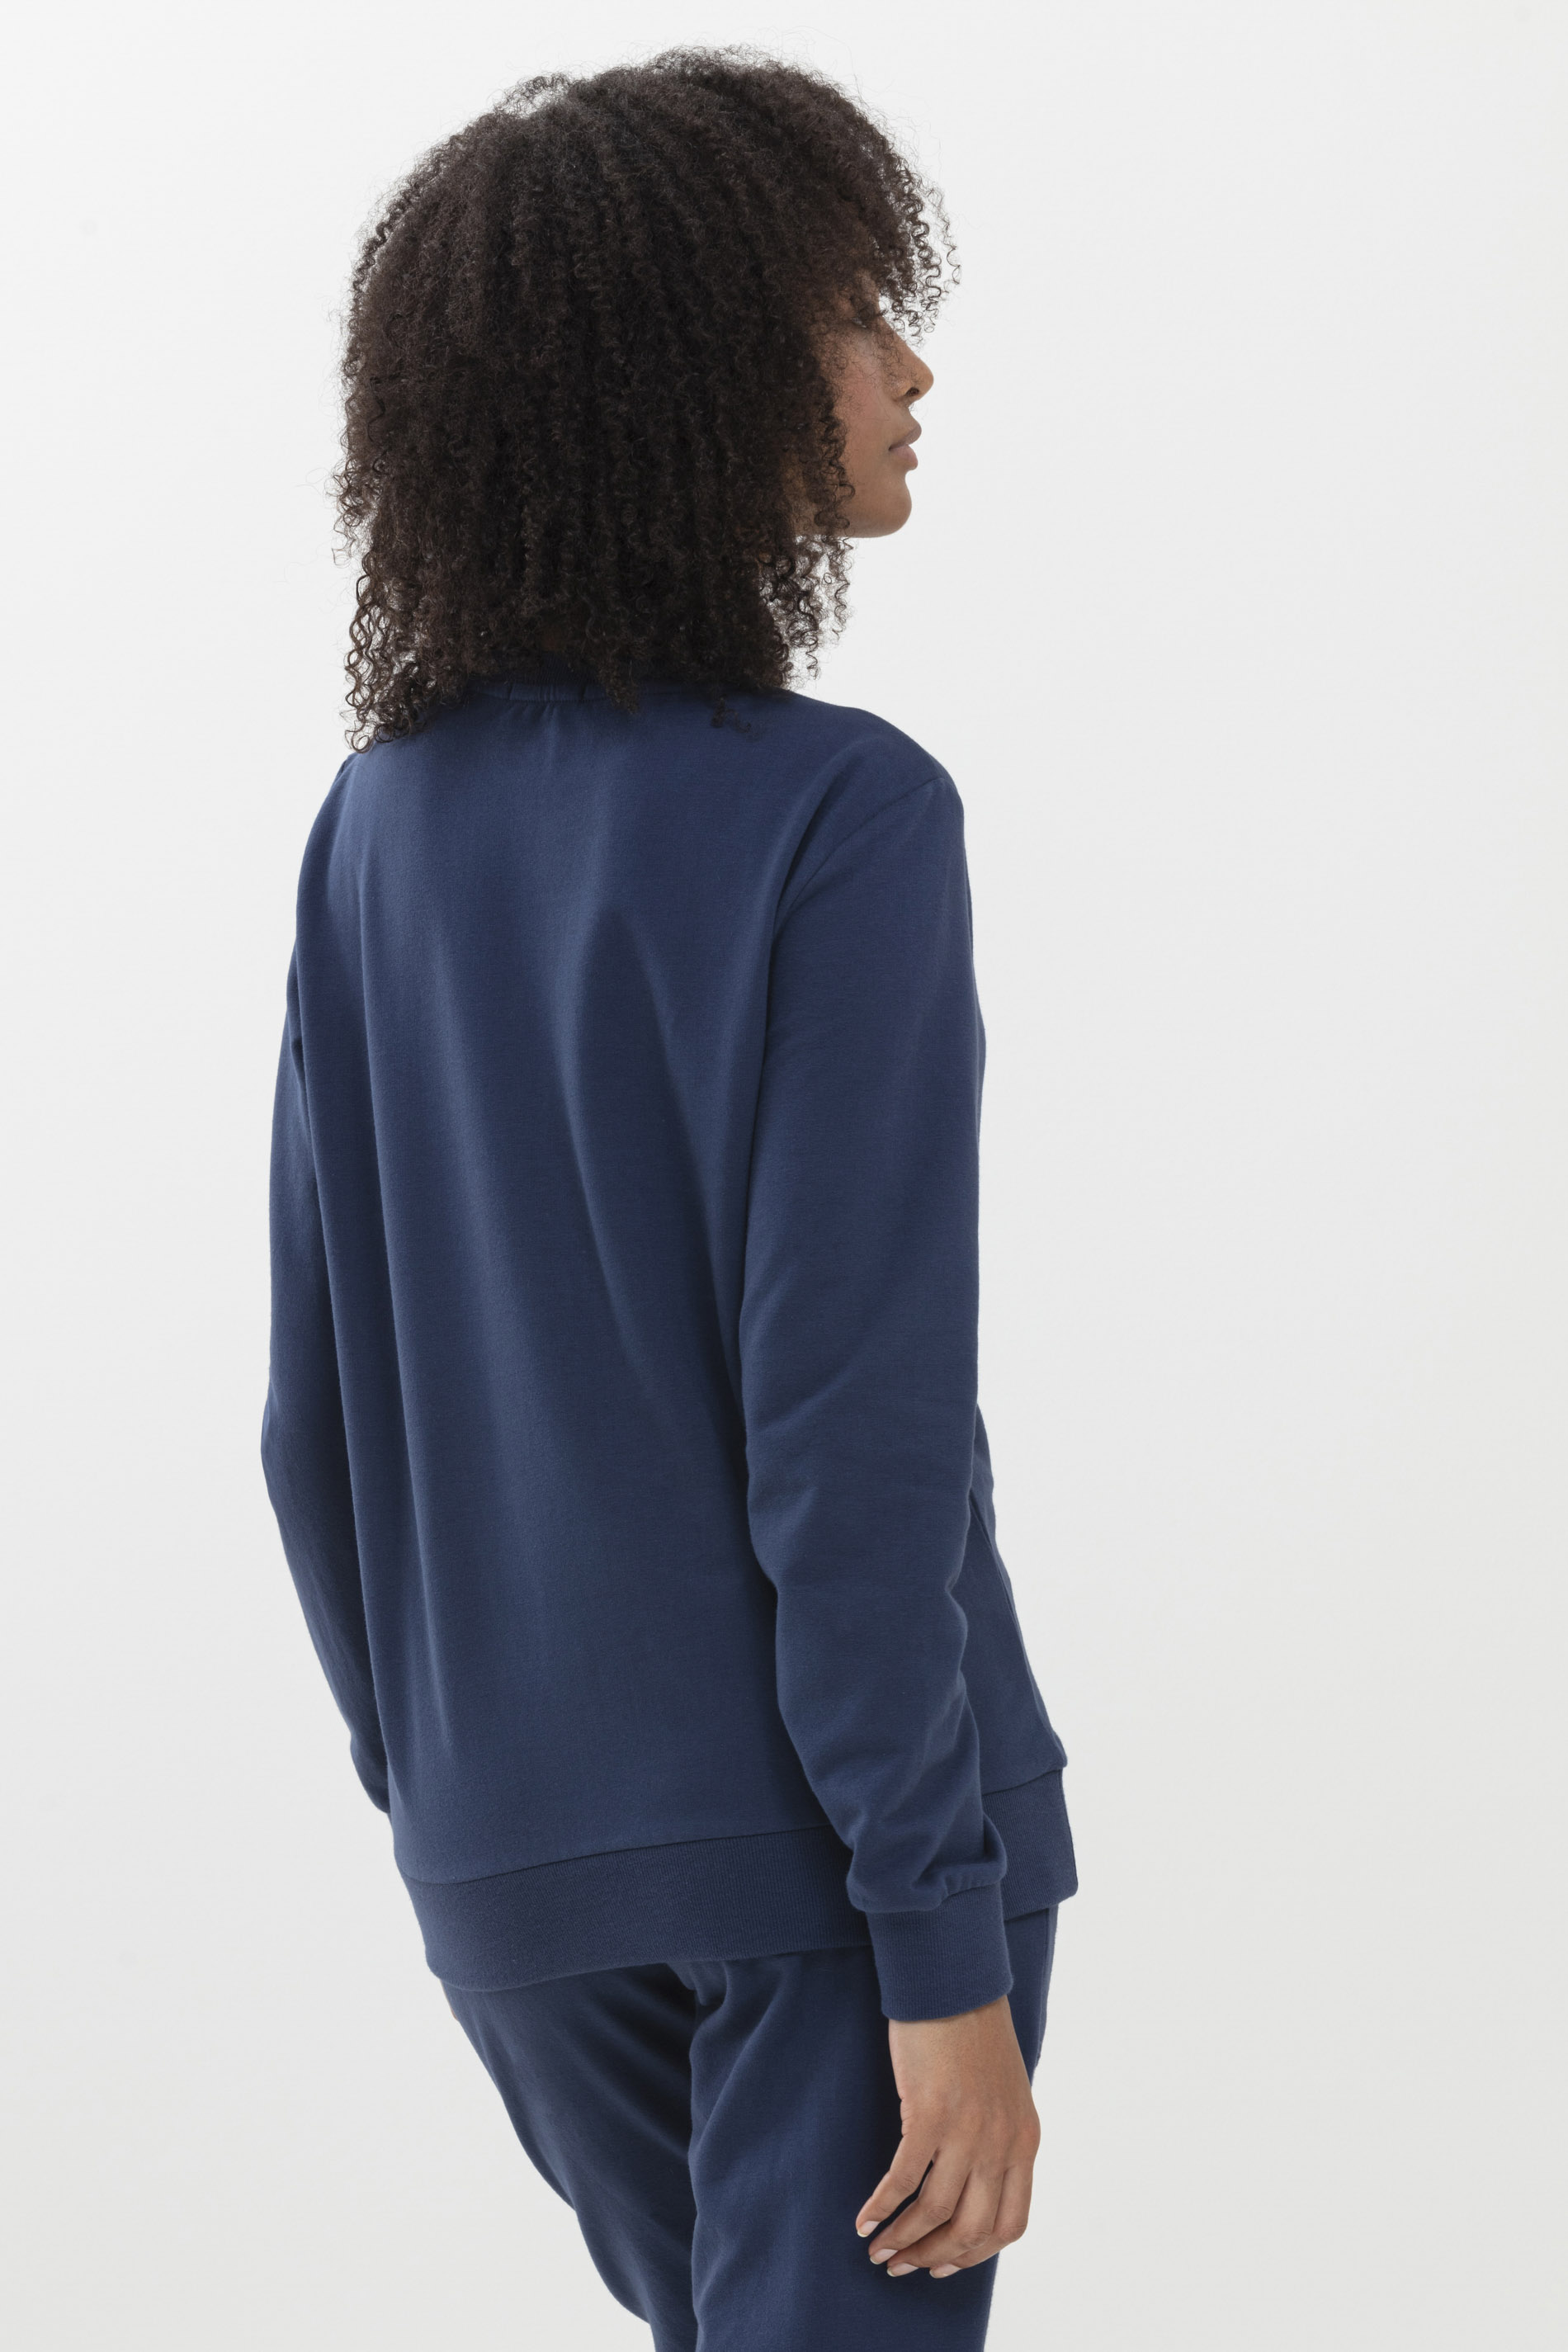 Sweater New Blue Serie Mia Rückansicht | mey®